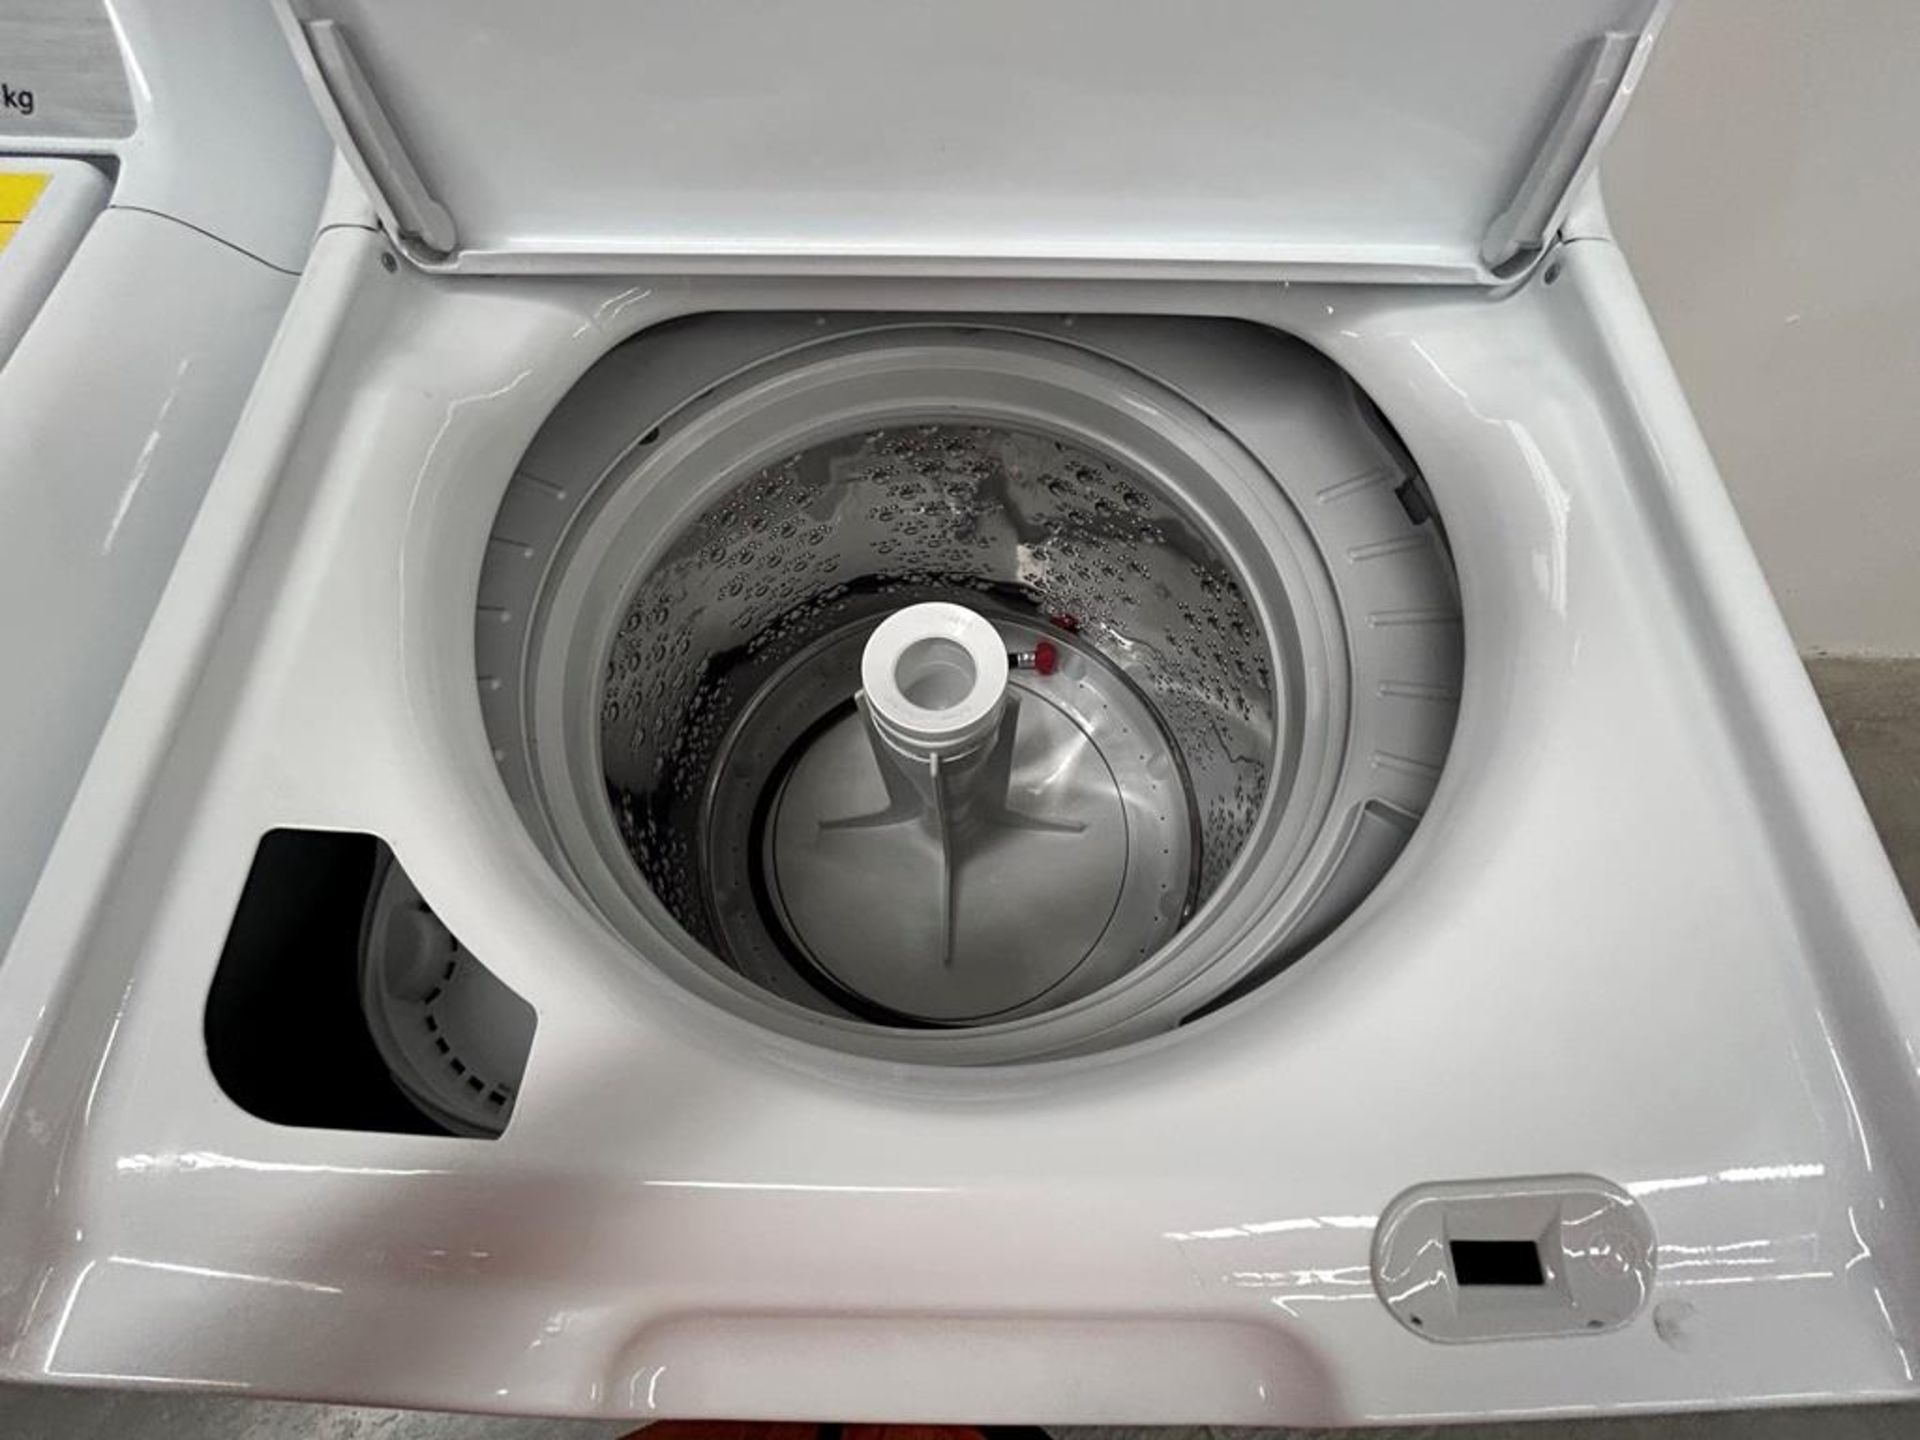 Lote de 2 lavadoras contiene: 1 Lavadora de 18 KG Marca MABE, Modelo LMA78113CBAB01, Serie S74287, - Image 4 of 10